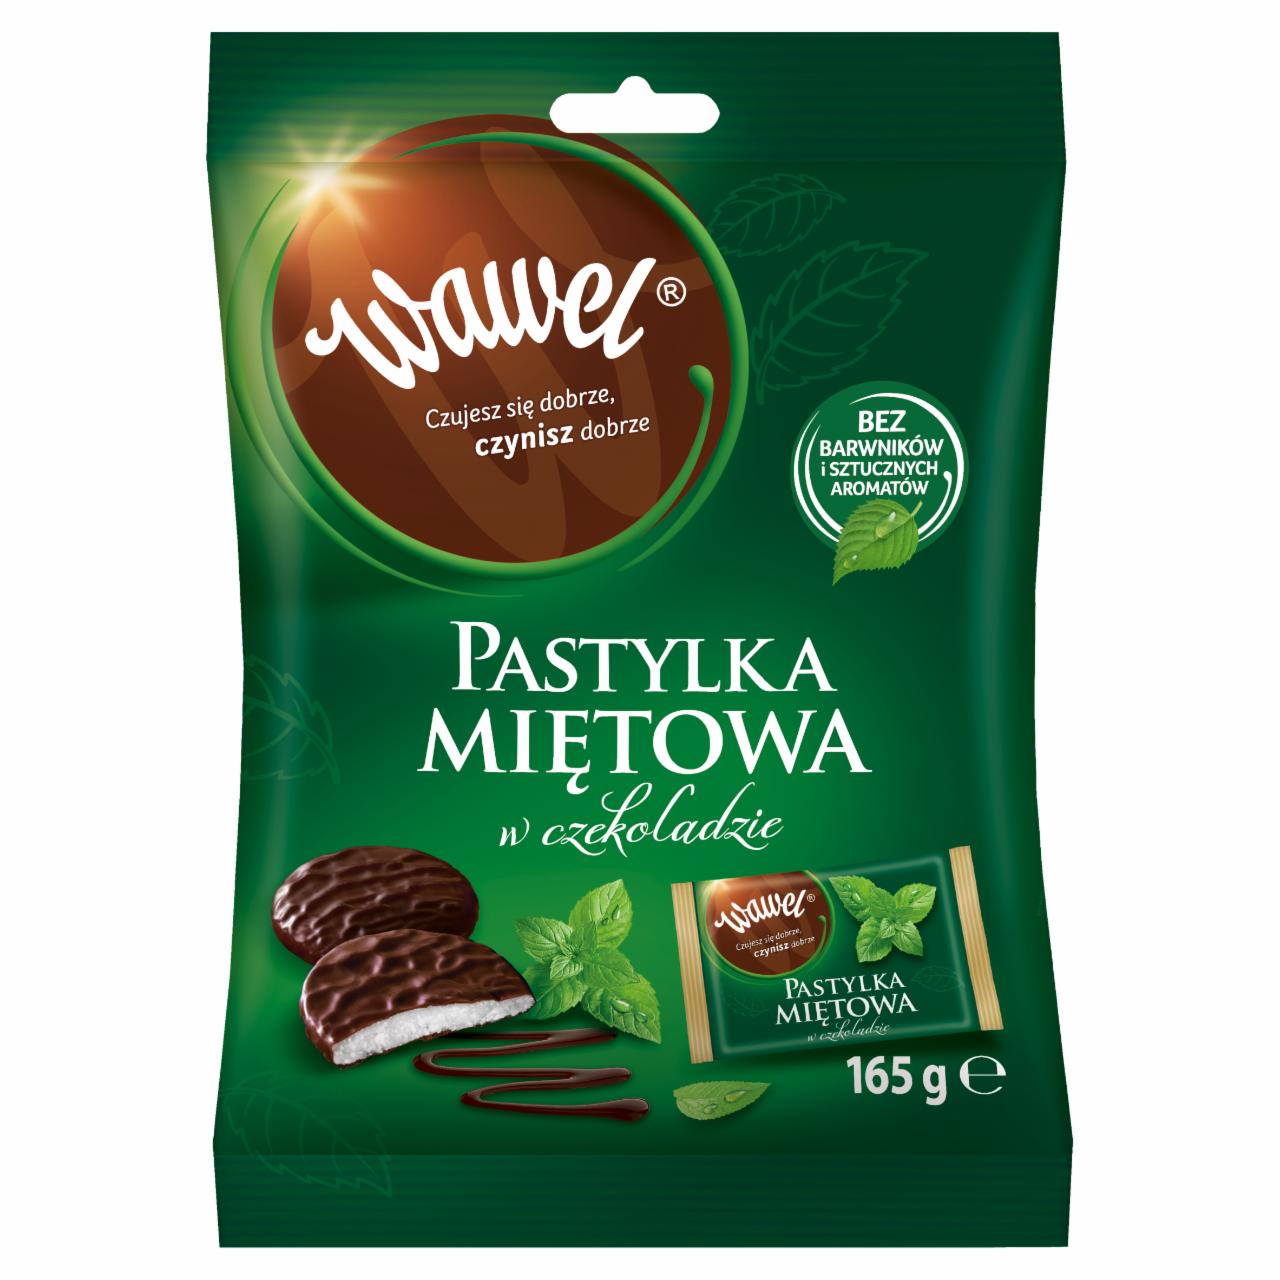 Zdjęcia - Wawel Pastylka miętowa w czekoladzie 165 g